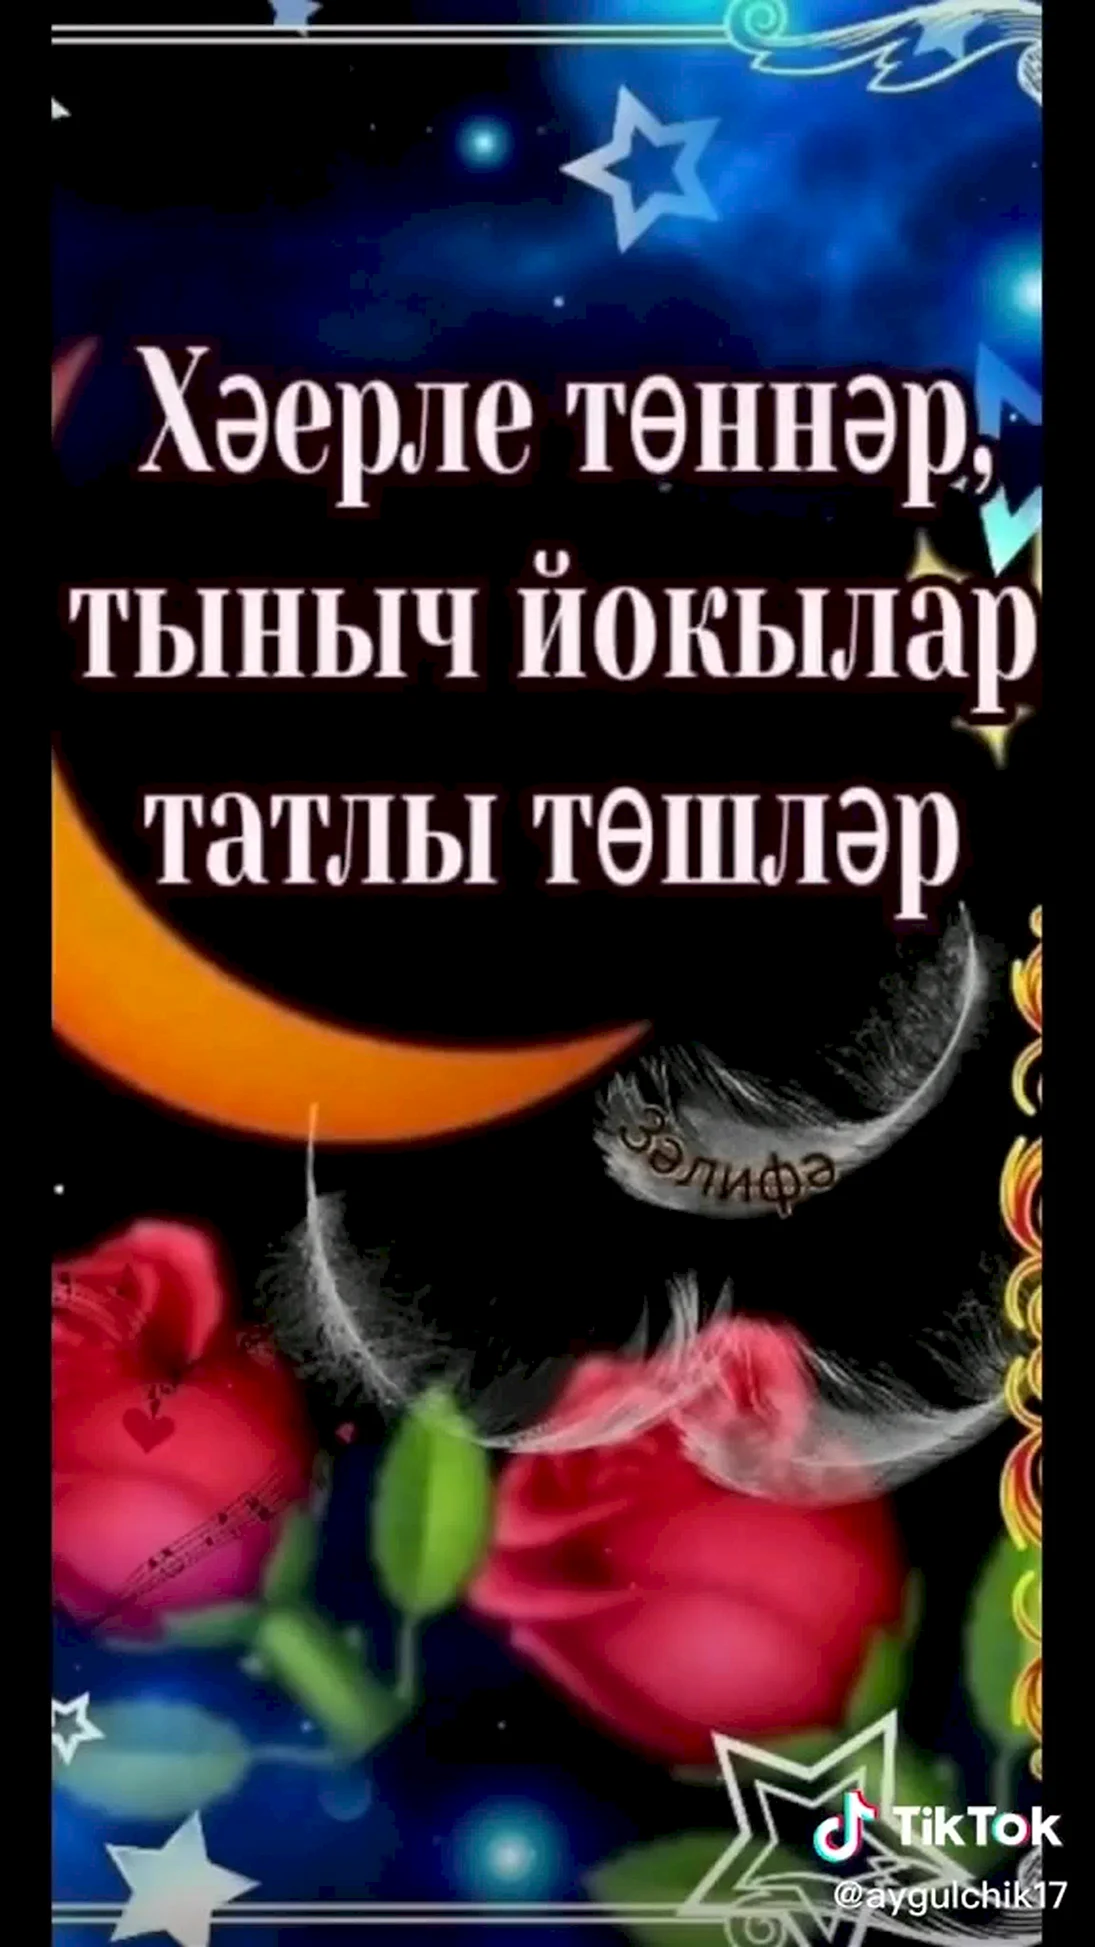 Спокойной ночи на татарском